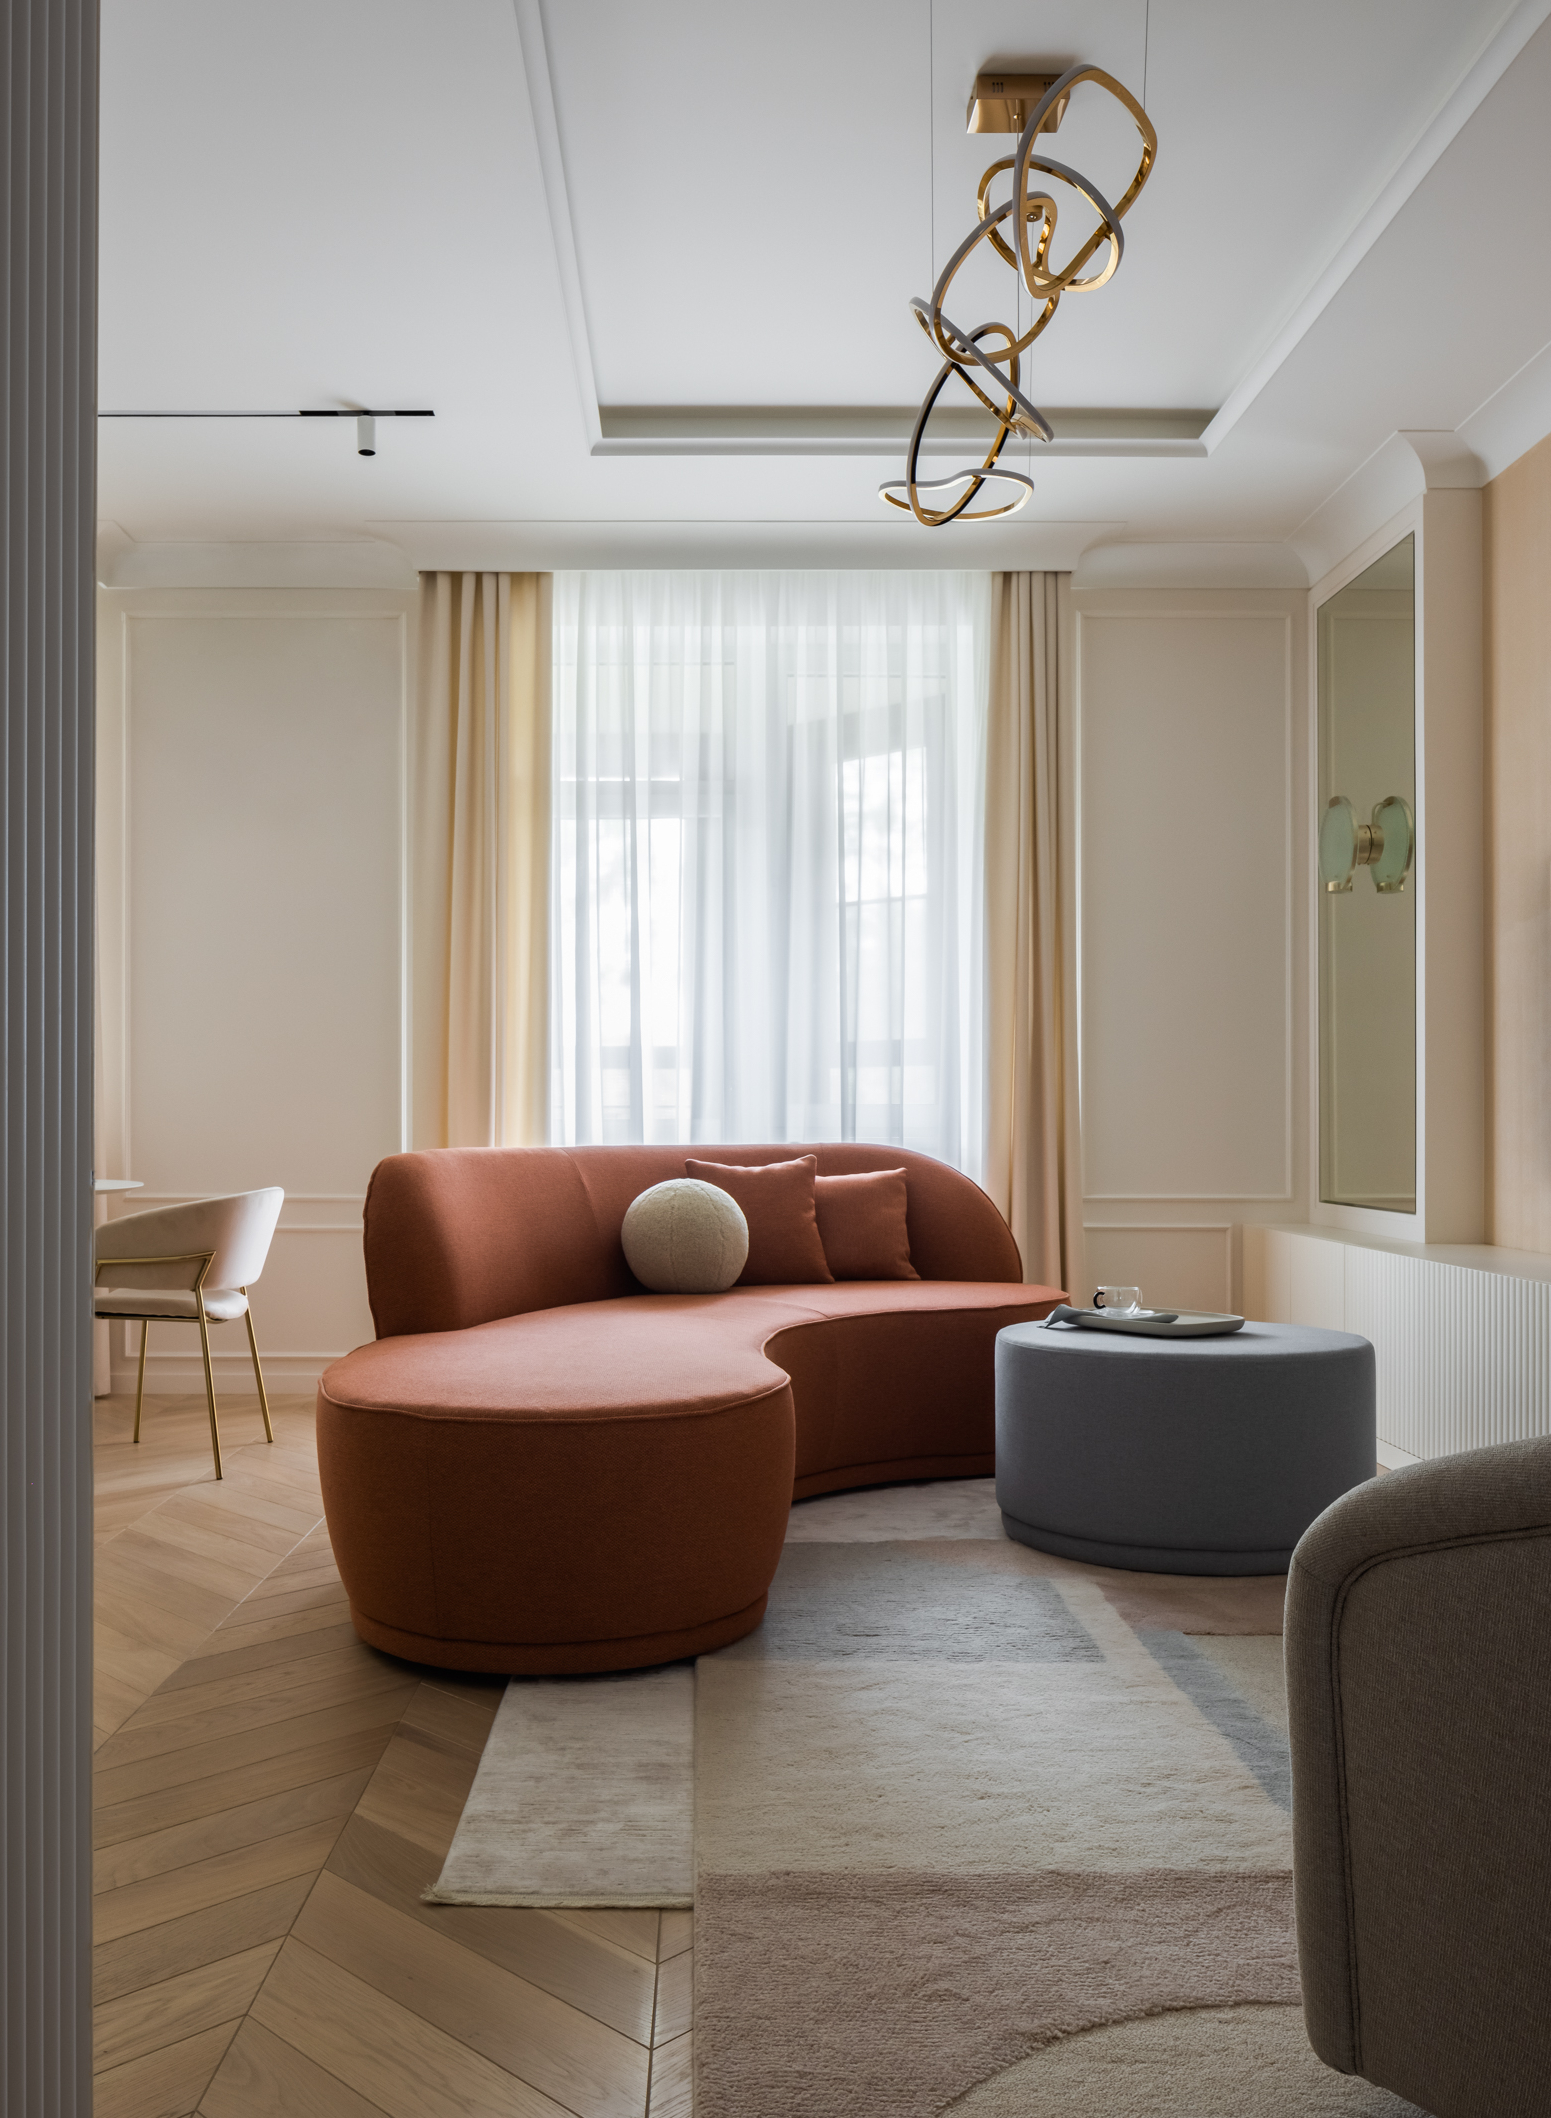 Phòng khách ấn tượng với bộ bàn nước và ghế sofa có đường cong mềm mại, đặt gia công theo bản thiết kế của Olga. Sự kết hợp của màu gạch đất nung cùng xanh lam nhạt cho cảm giác vừa ấm áp vừa tươi mới.